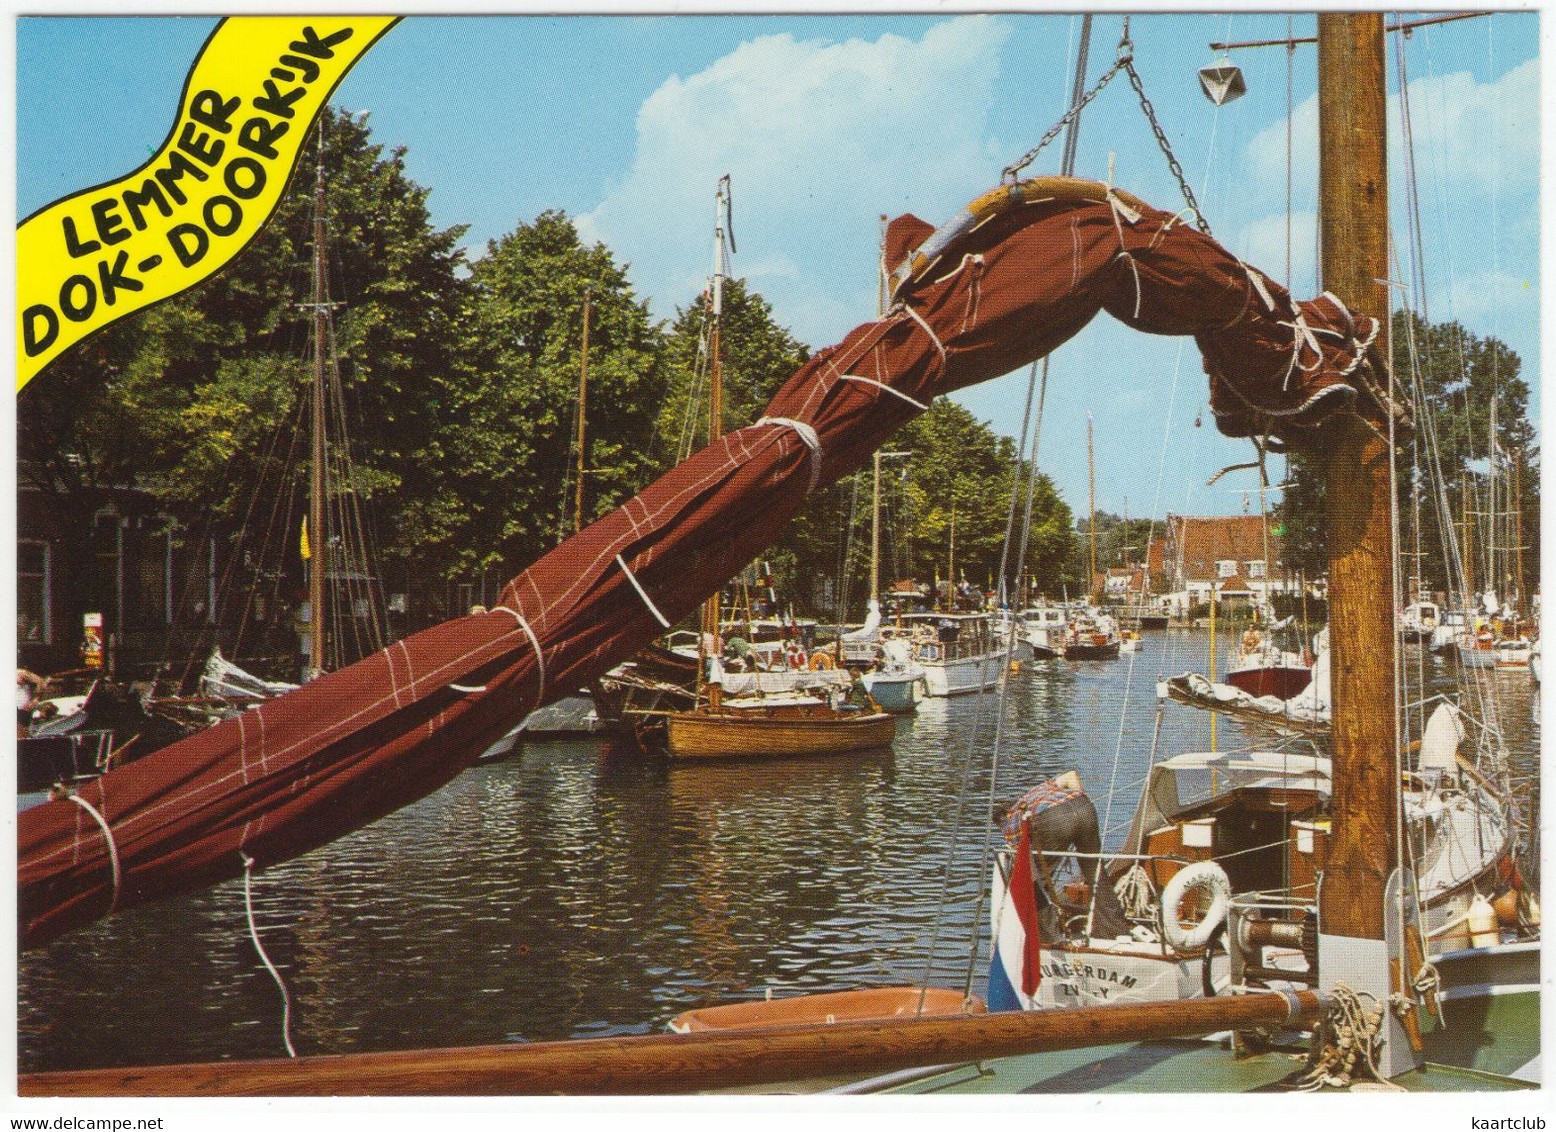 Lemmer - Dok - Doorkijk - (Friesland, Holland) - Jachten/Yachts - Lemmer